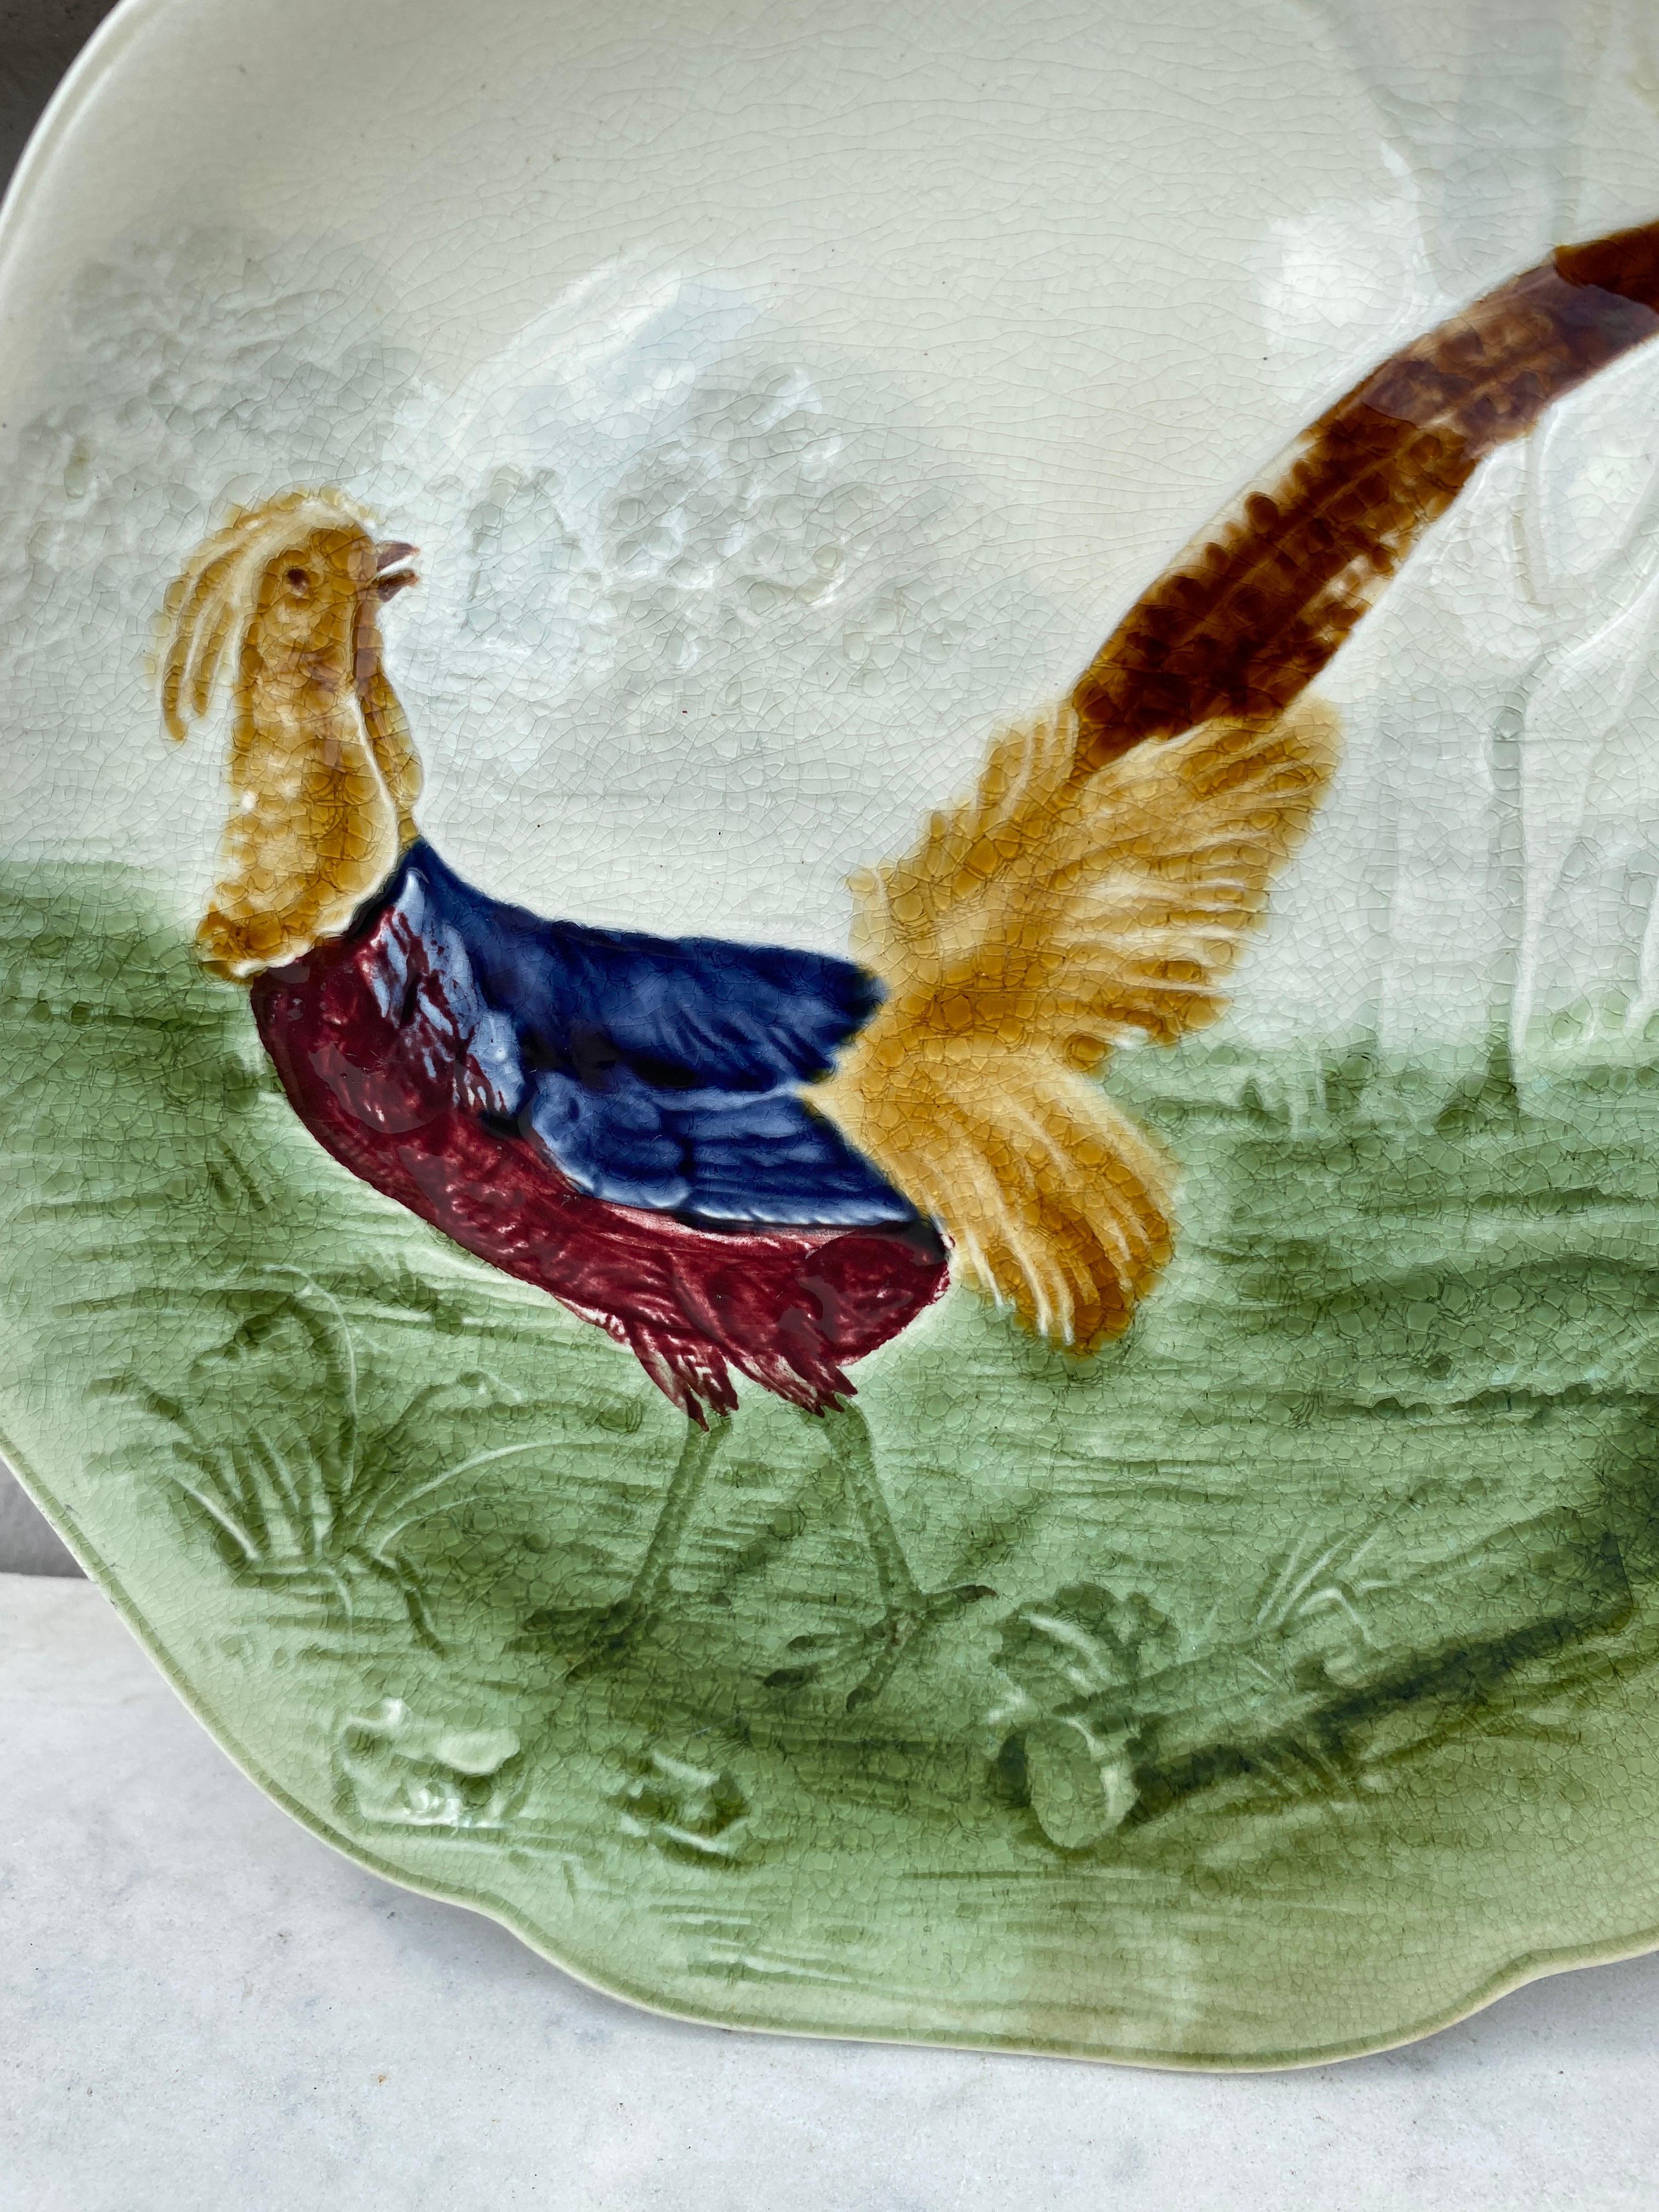 Assiette en majolique représentant un faisan dans les bois, signée Hippolyte Boulenger Choisy-le-Roi, vers 1890.
La manufacture de Choisy-le-Roi était l'une des plus importantes à la fin du 19ème siècle, elle produisait des céramiques de très haute